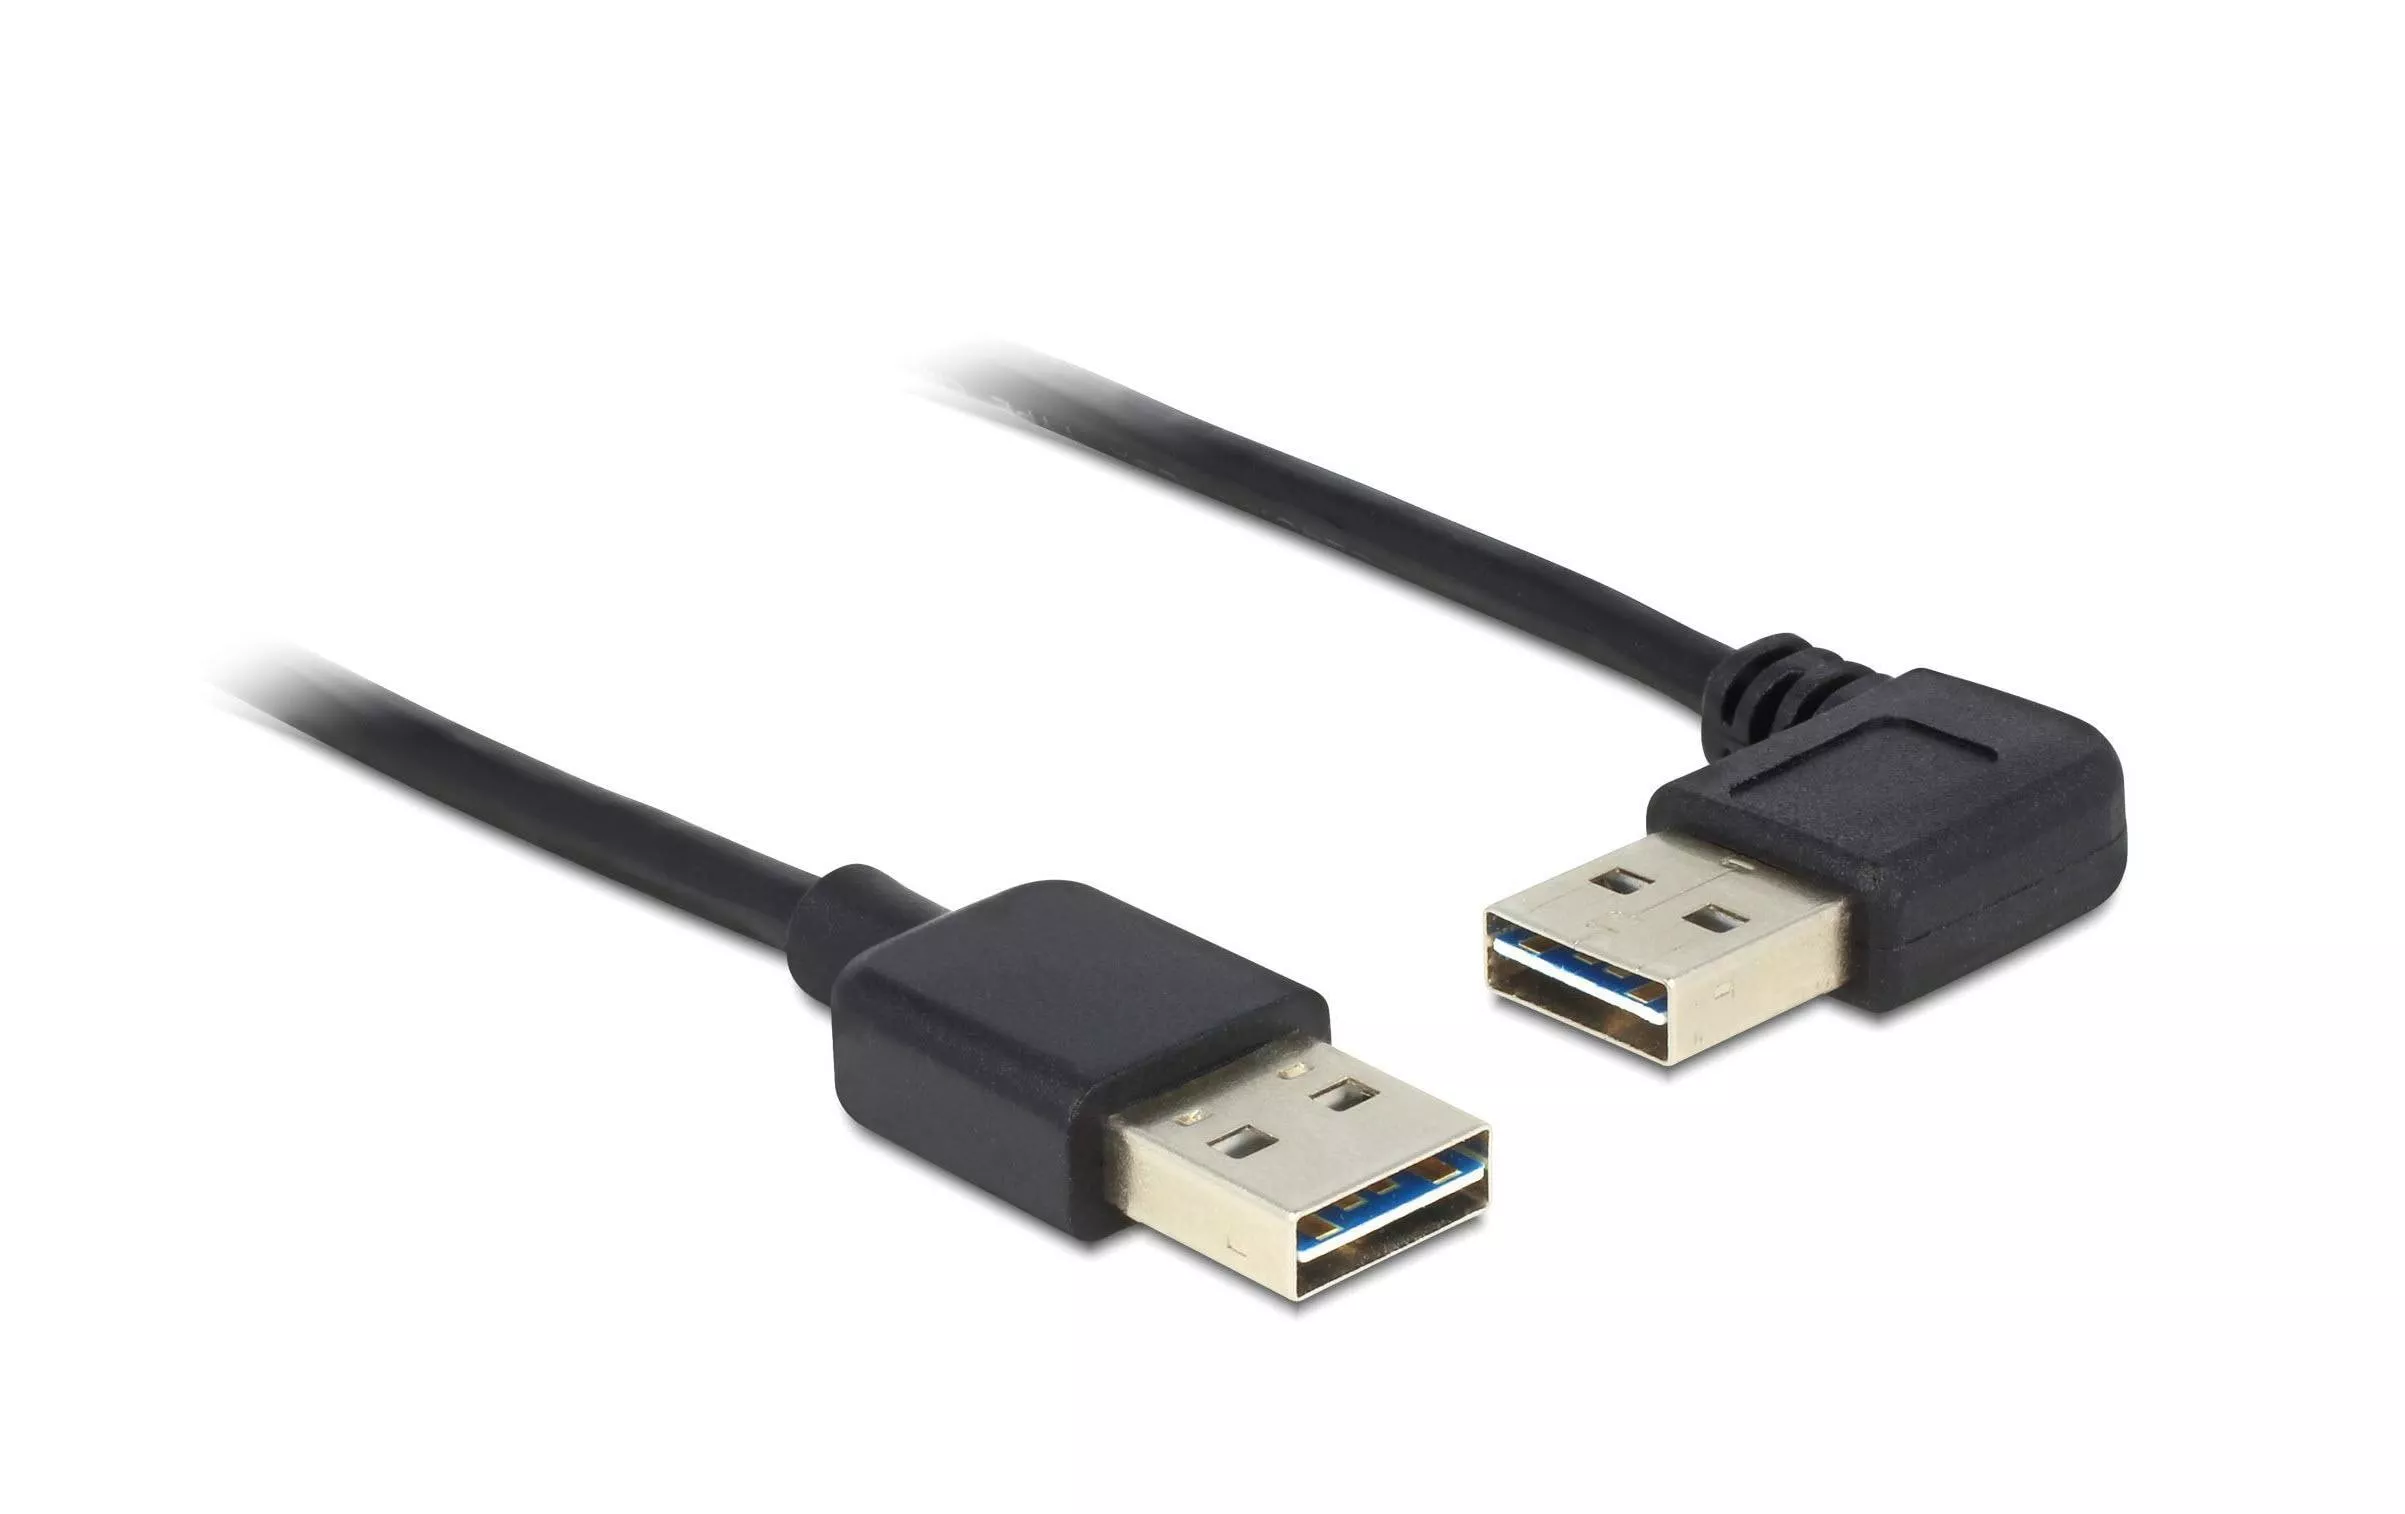 Câble USB 2.0 EASY-USB USB A - USB A 2 m